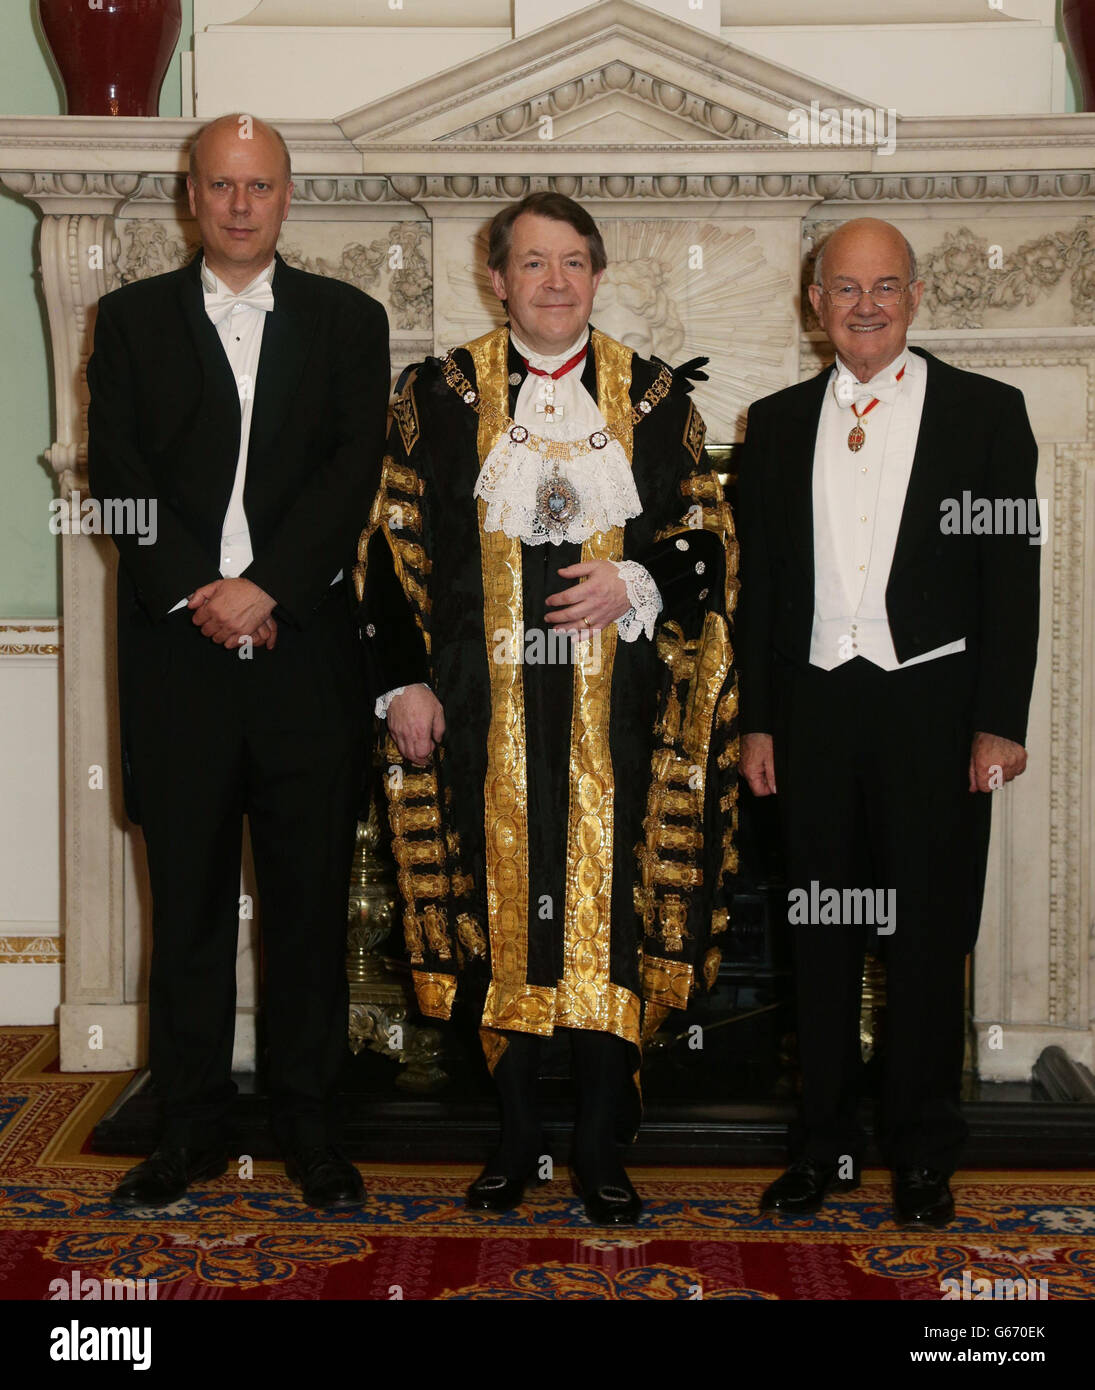 (Da sinistra a destra) il segretario di giustizia Chris Grayling; Alderman Roger Gifford, il sindaco di Londra e il giudice del Signore, il capo della giustizia, che partecipa al sindaco del Signore della città di Londra cena ai giudici di sua Maestà, alla Mansion House di Londra. Foto Stock